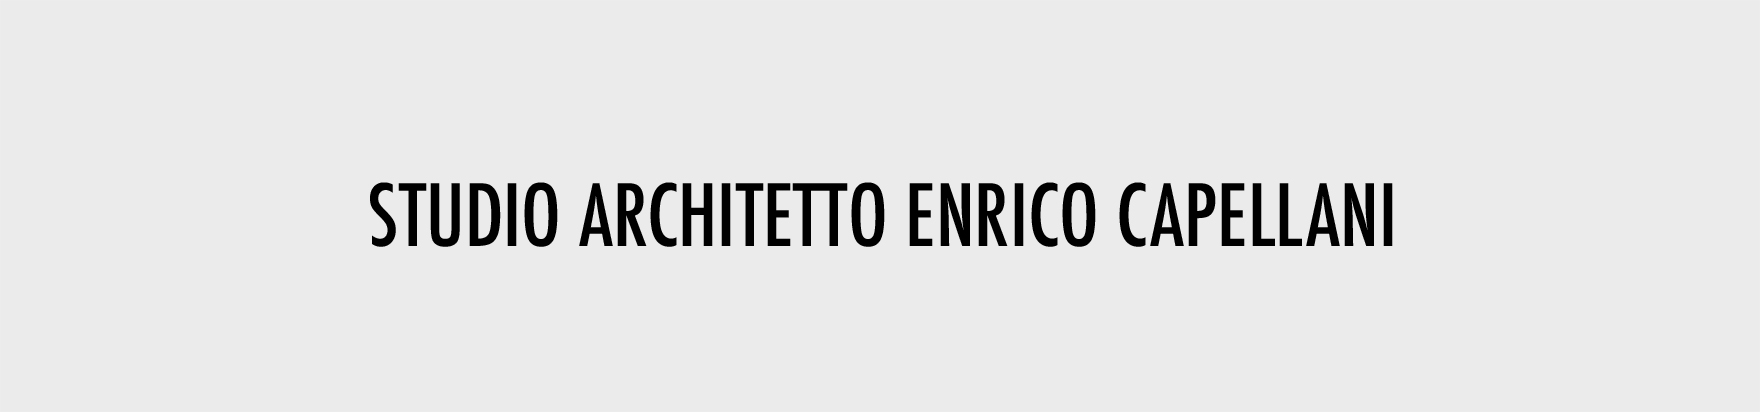 ARCHITETTURE OK-ARCHITETTO ENRICO CAPELLANI